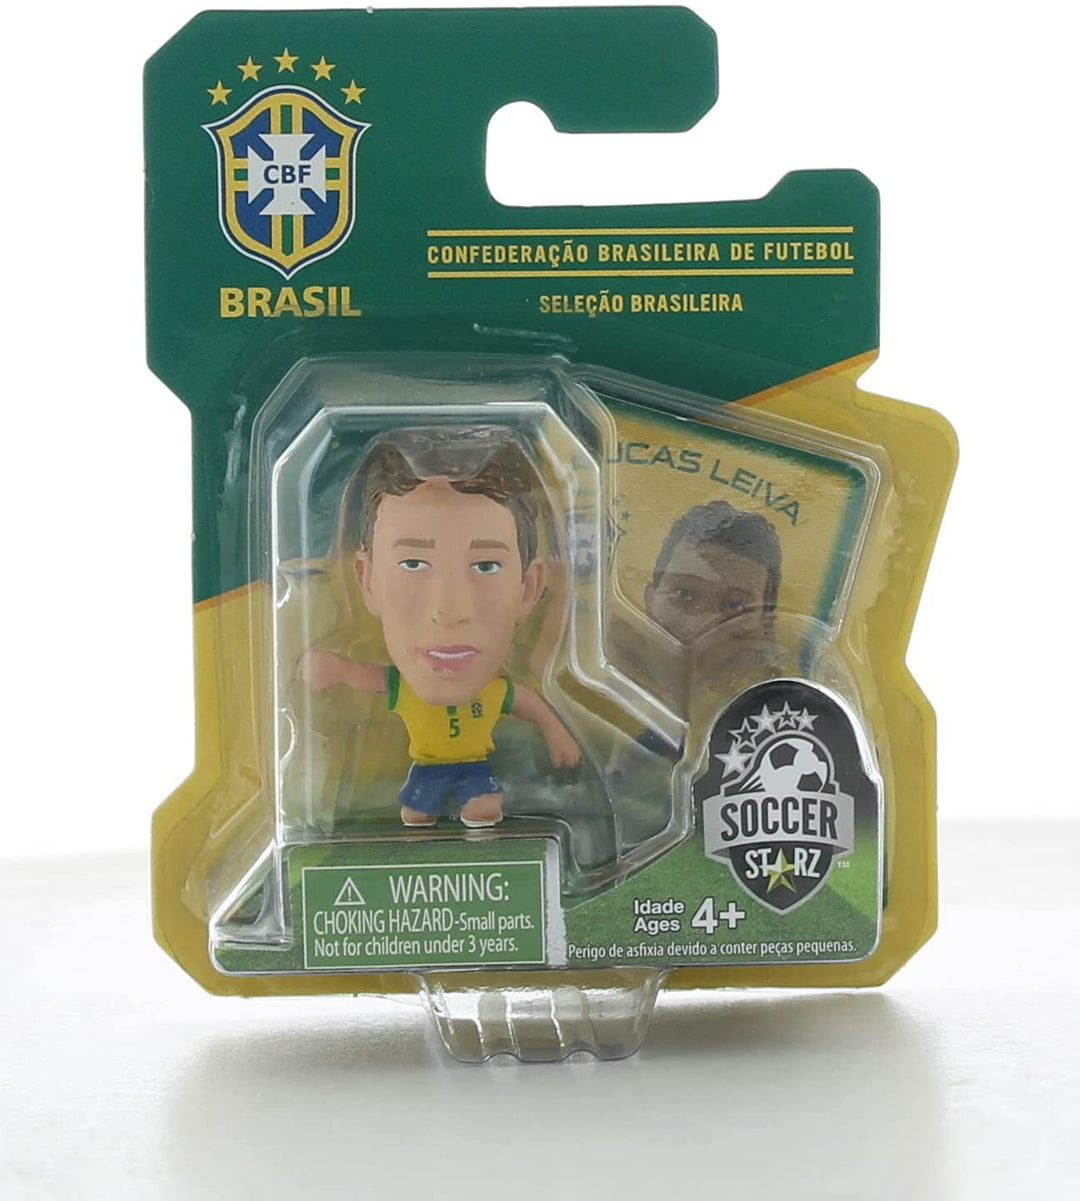 SoccerStarz Brazil International Figurine Blister Pack Featuring Lucas Leiva Home Kit